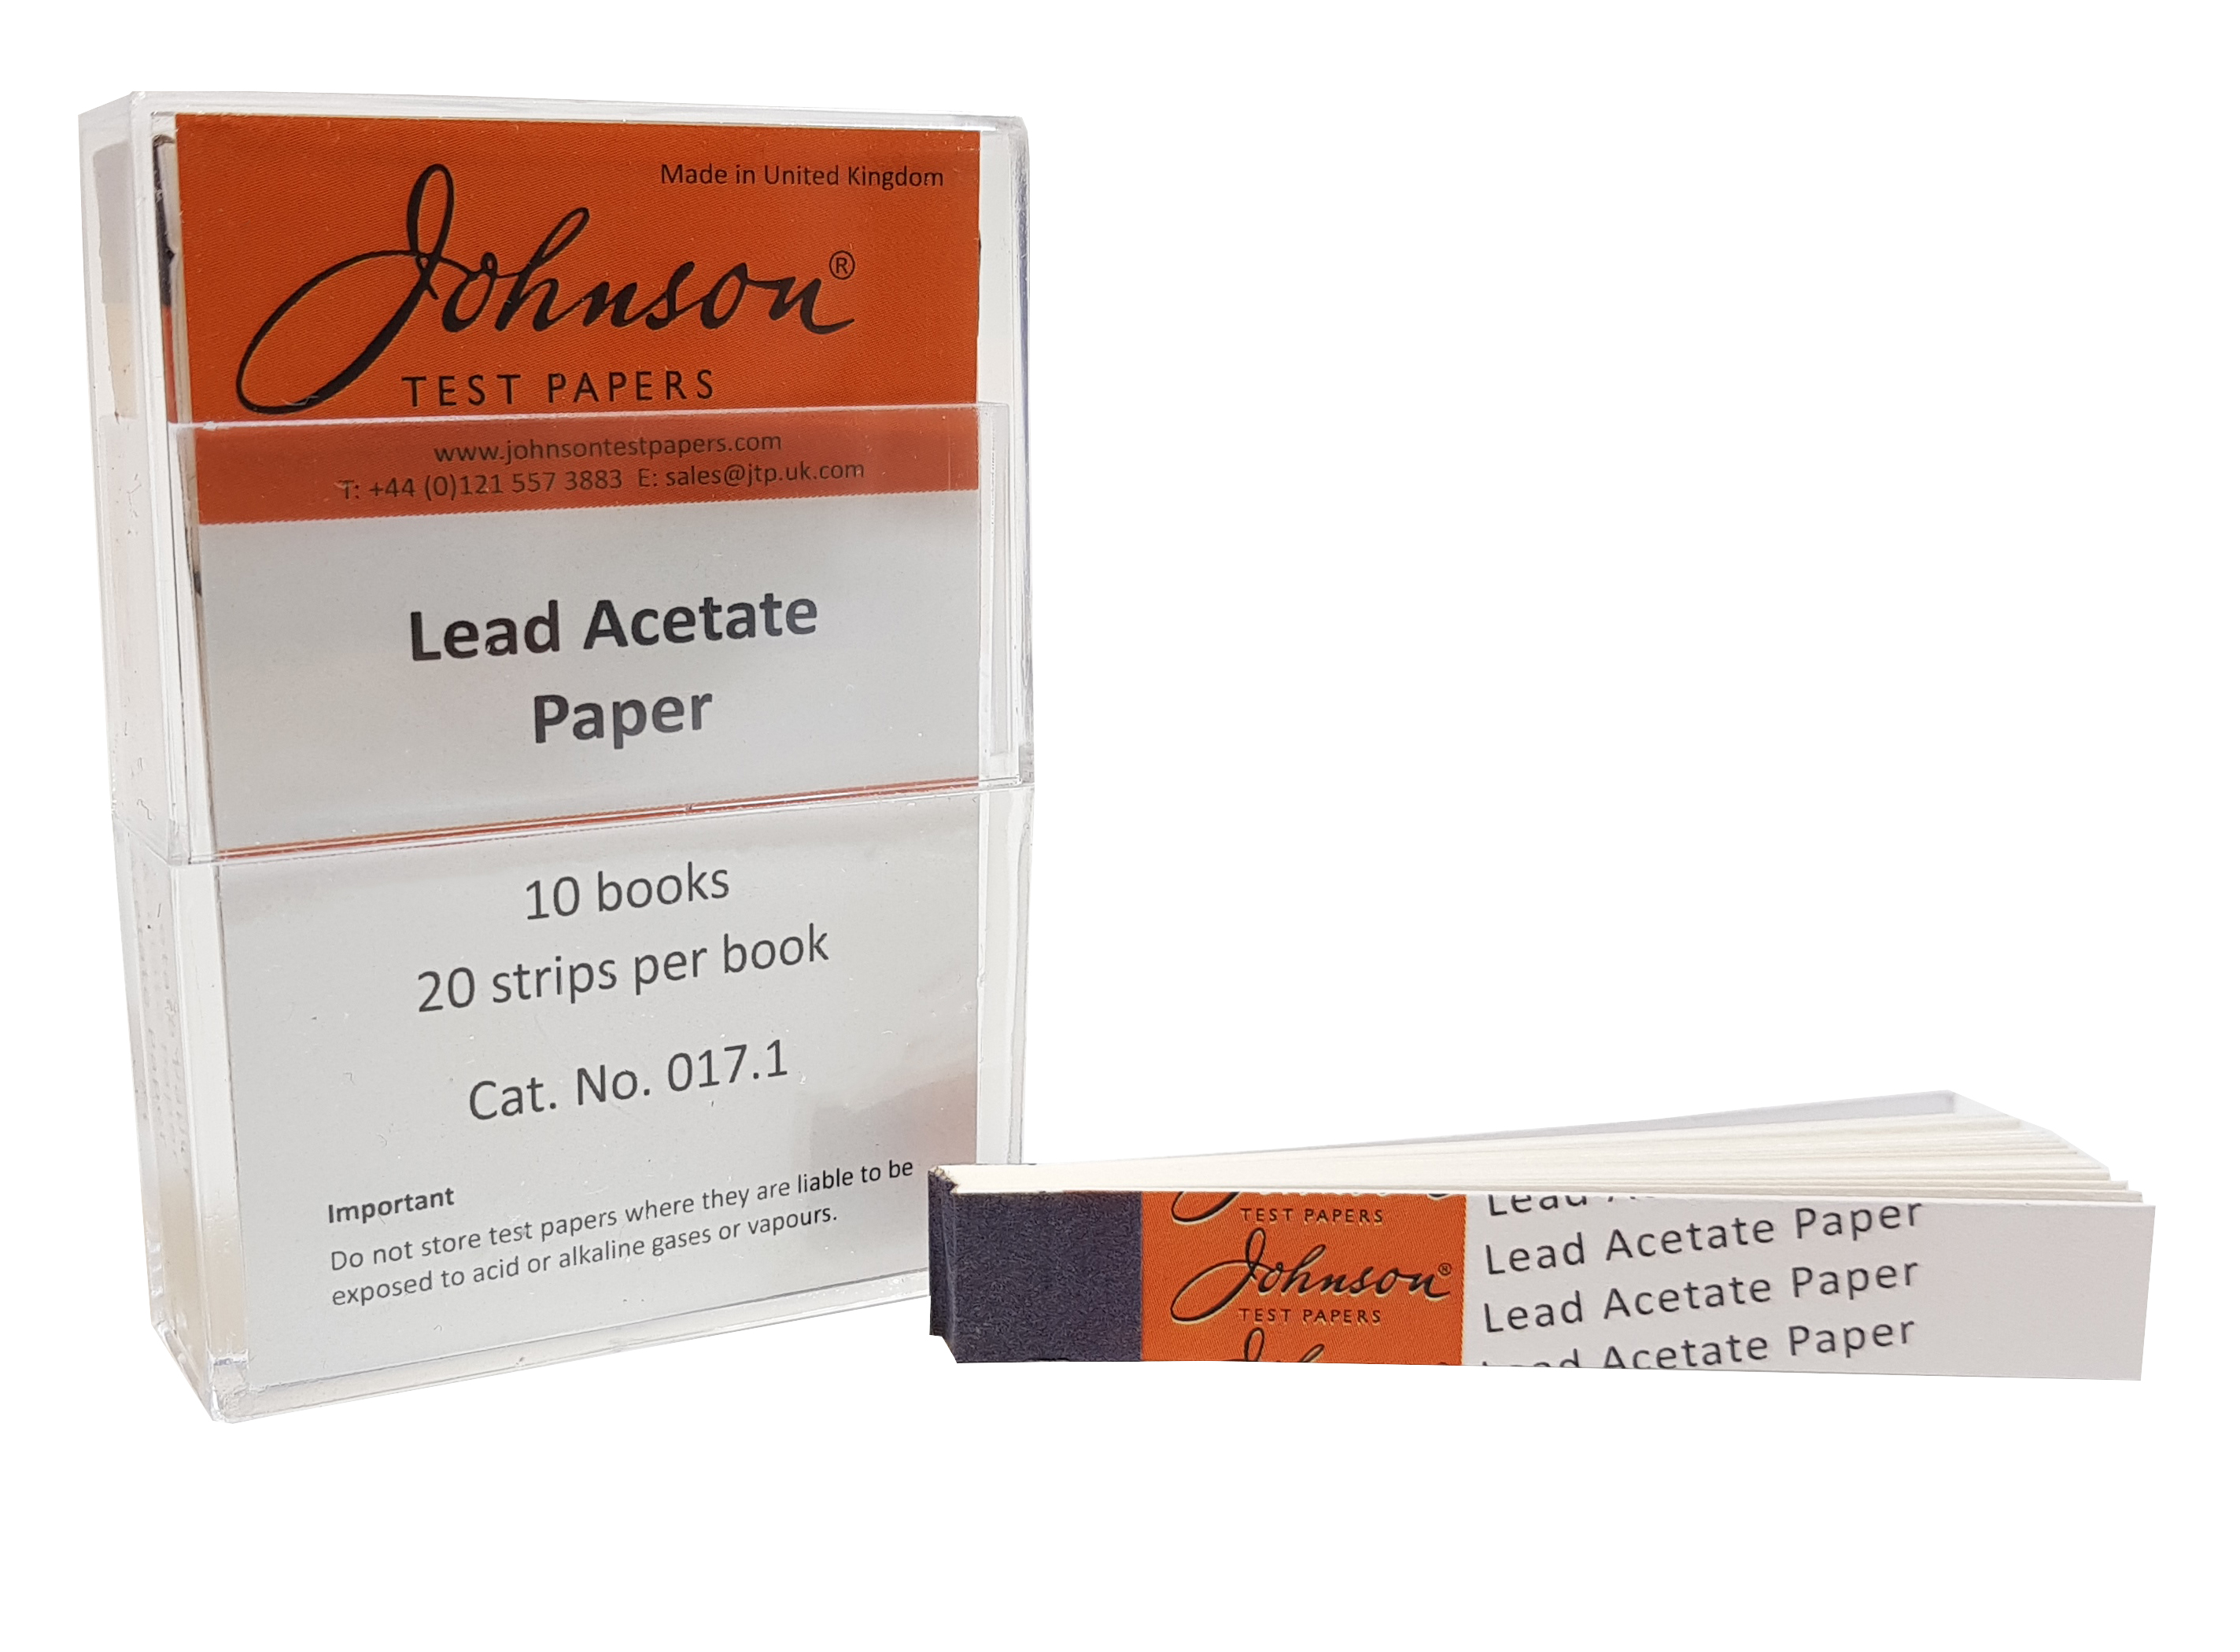 Lead Acetate Paper